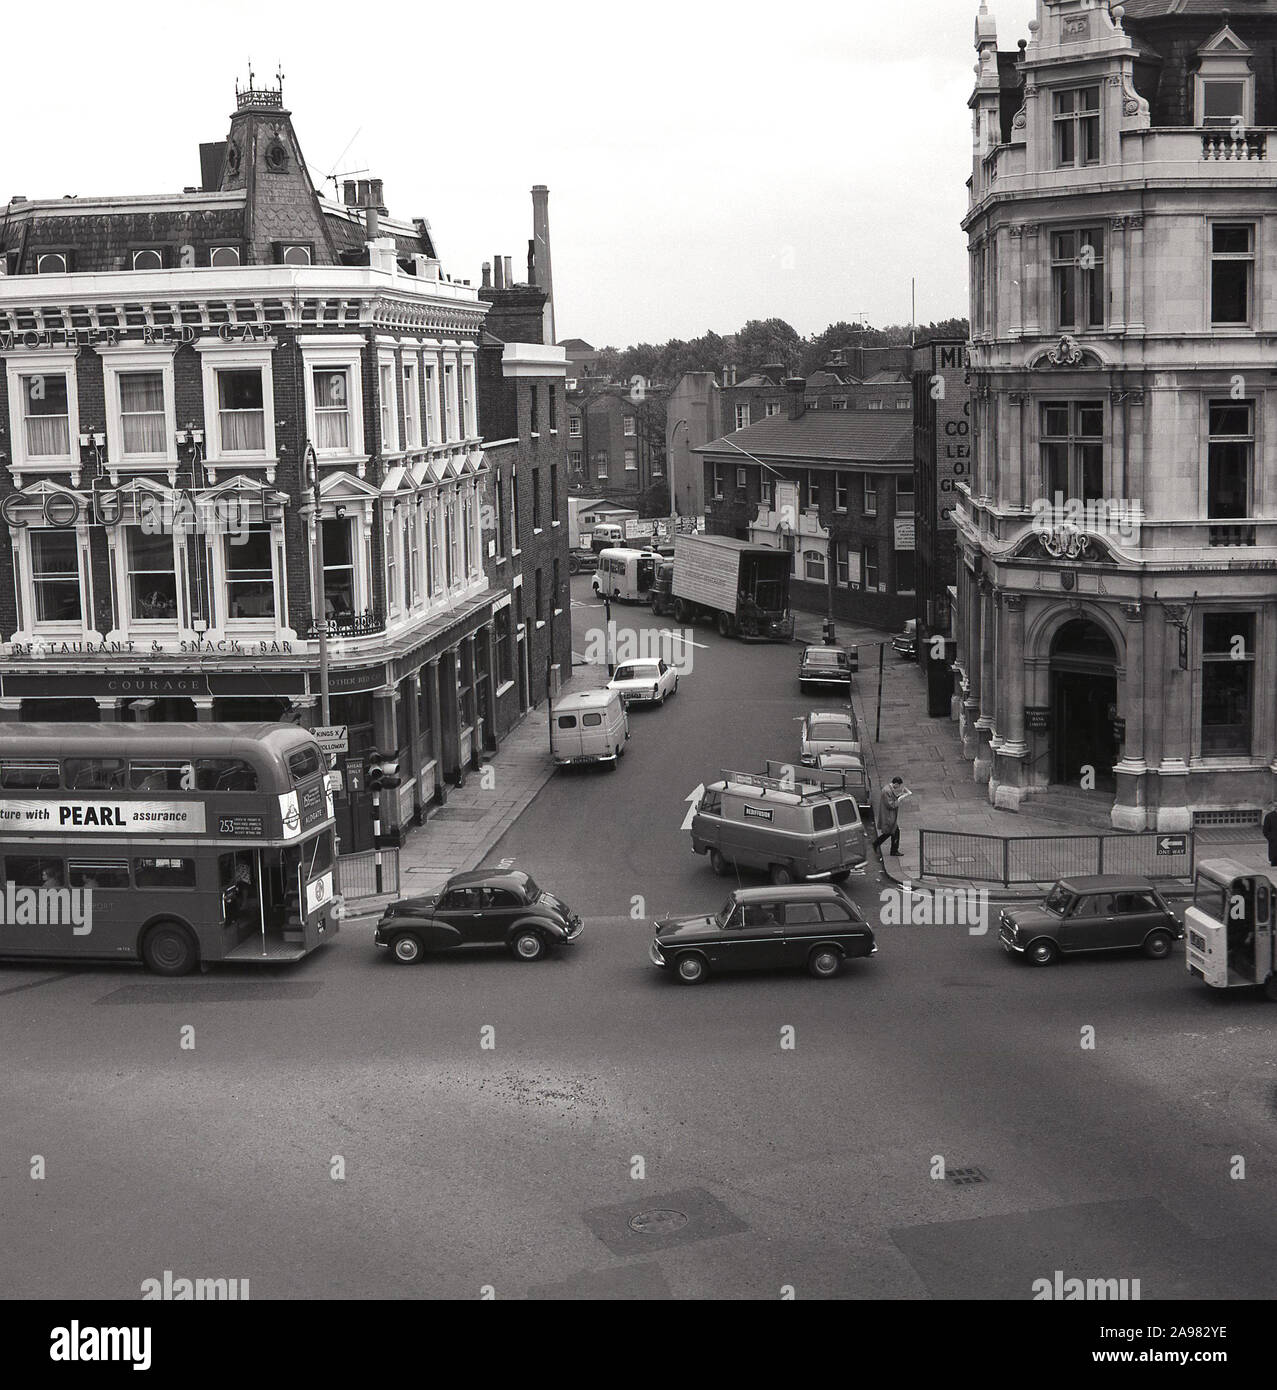 1960, historische, Luftaufnahme von Camden Road, London, mit Gebäuden, Pubs und Pkw und Transporter der Ära, England, Großbritannien, einschließlich einem Mut Pub, die Mutter rote Kappe, eine van der TV-Firma des Tages, Rediffusion, routemaster Bus anfd der Westminster Bank. Stockfoto